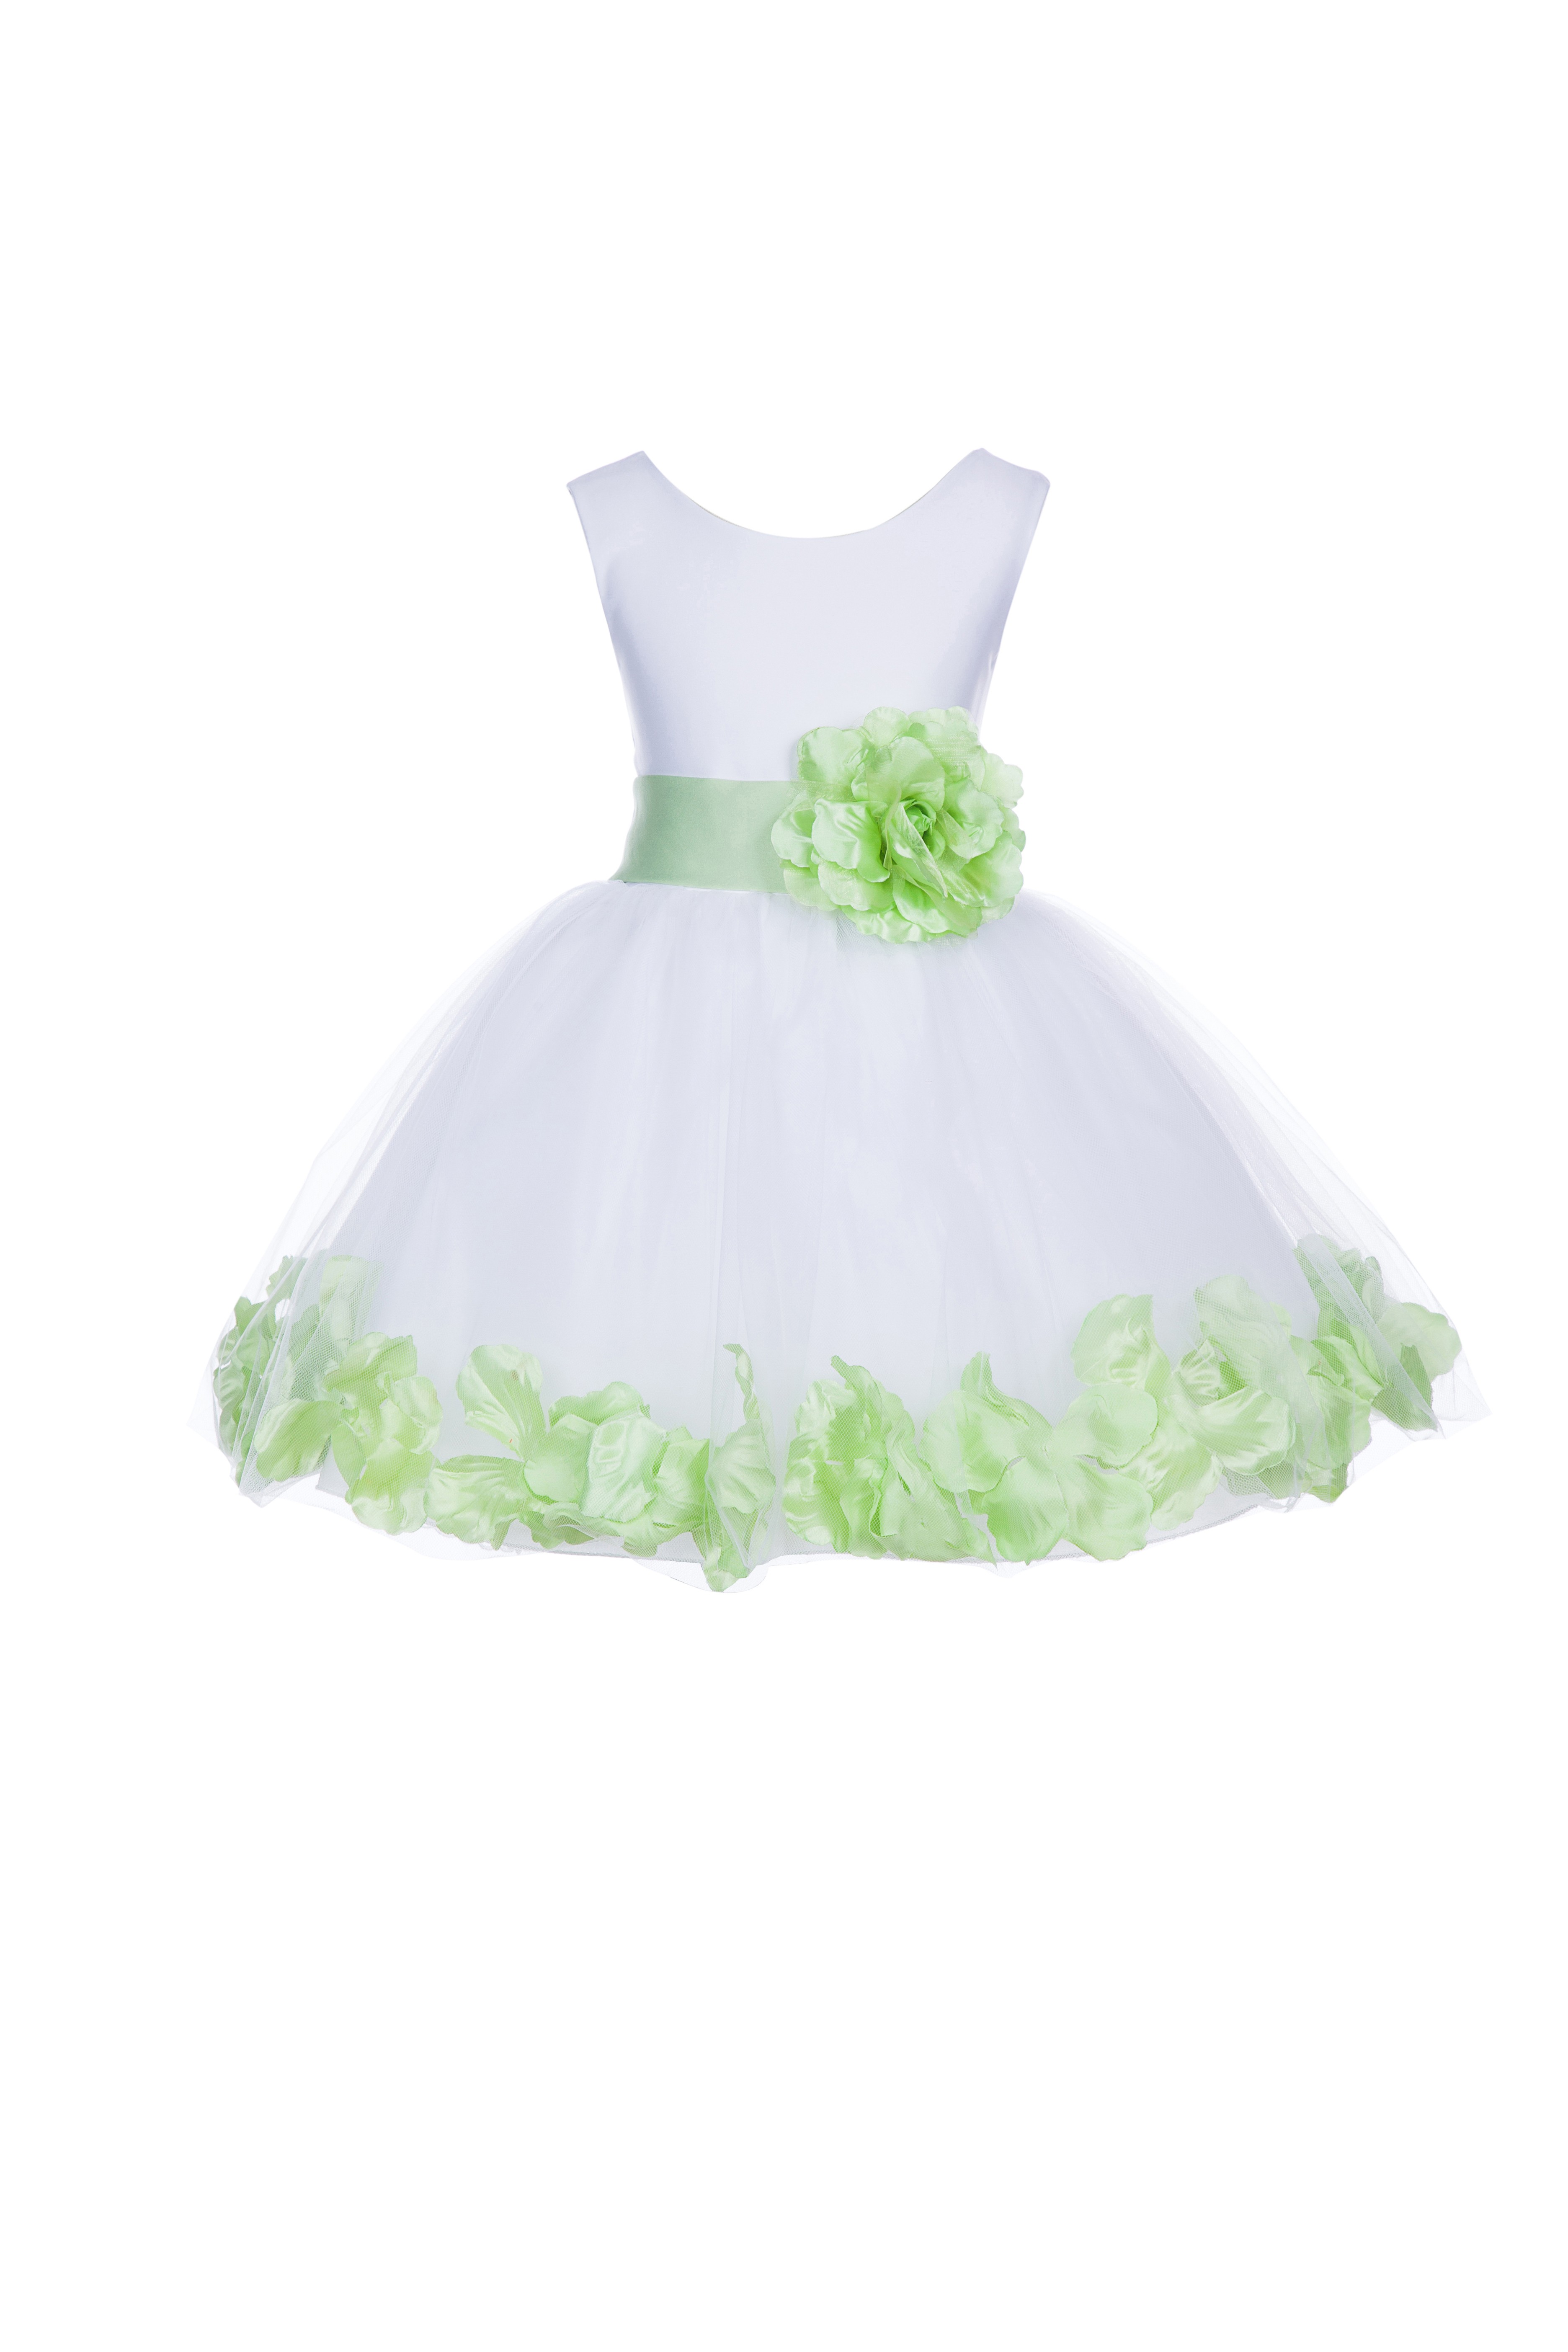 White/Apple Green Tulle Rose Petals Knee Length Flower Girl Dress 306S